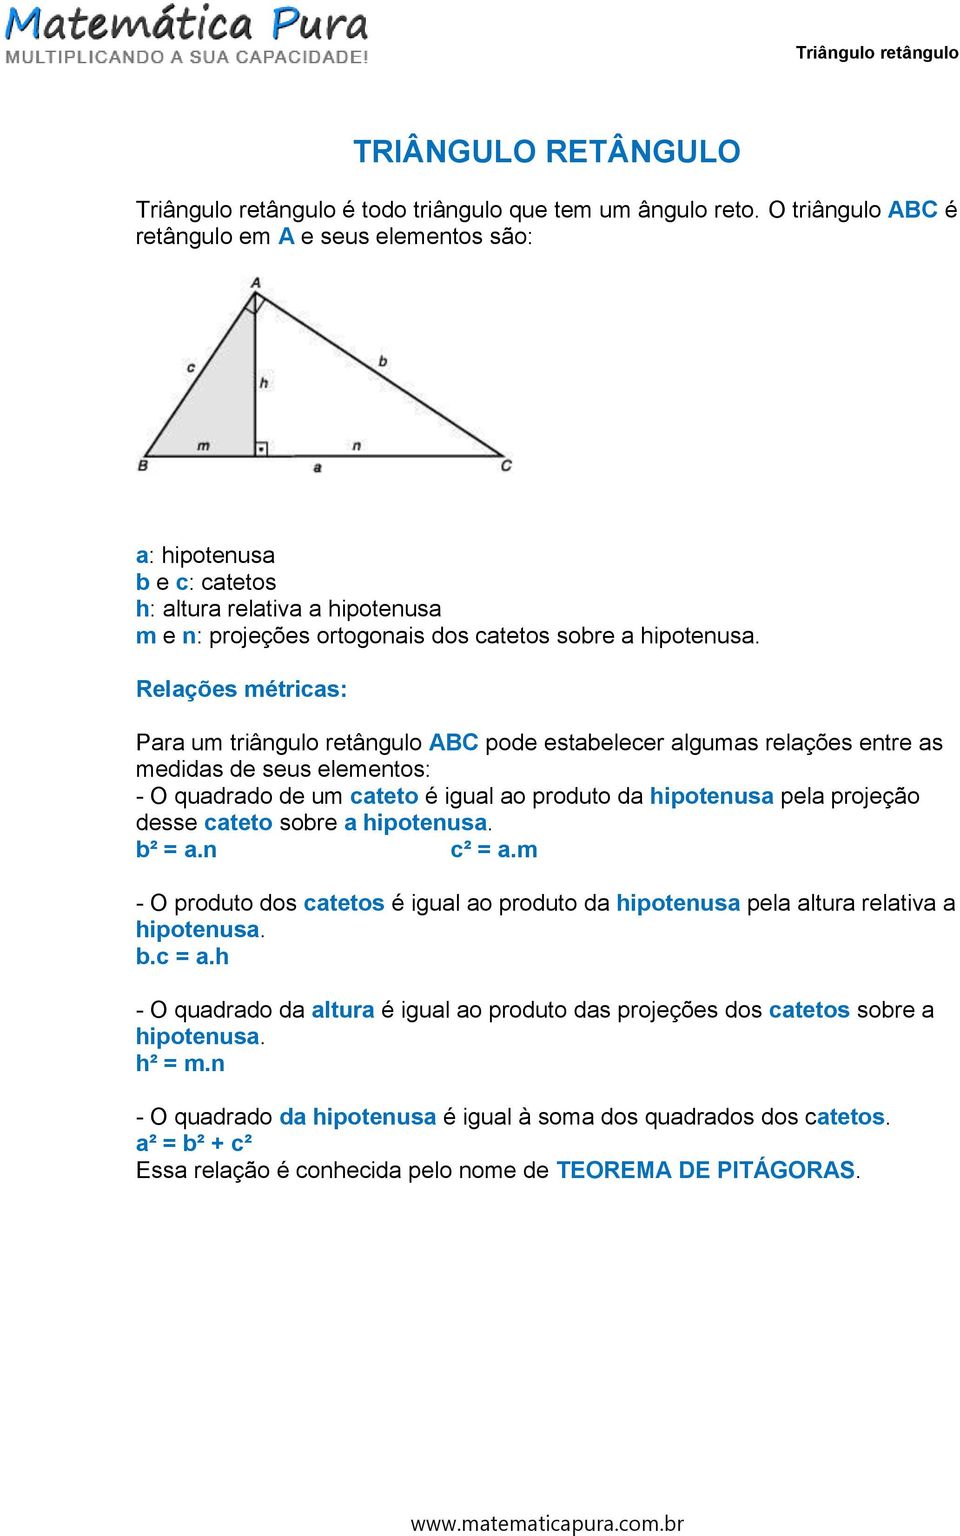 Relações métricas: Para um triângulo retângulo ABC pode estabelecer algumas relações entre as medidas de seus elementos: - O quadrado de um cateto é igual ao produto da hipotenusa pela projeção desse